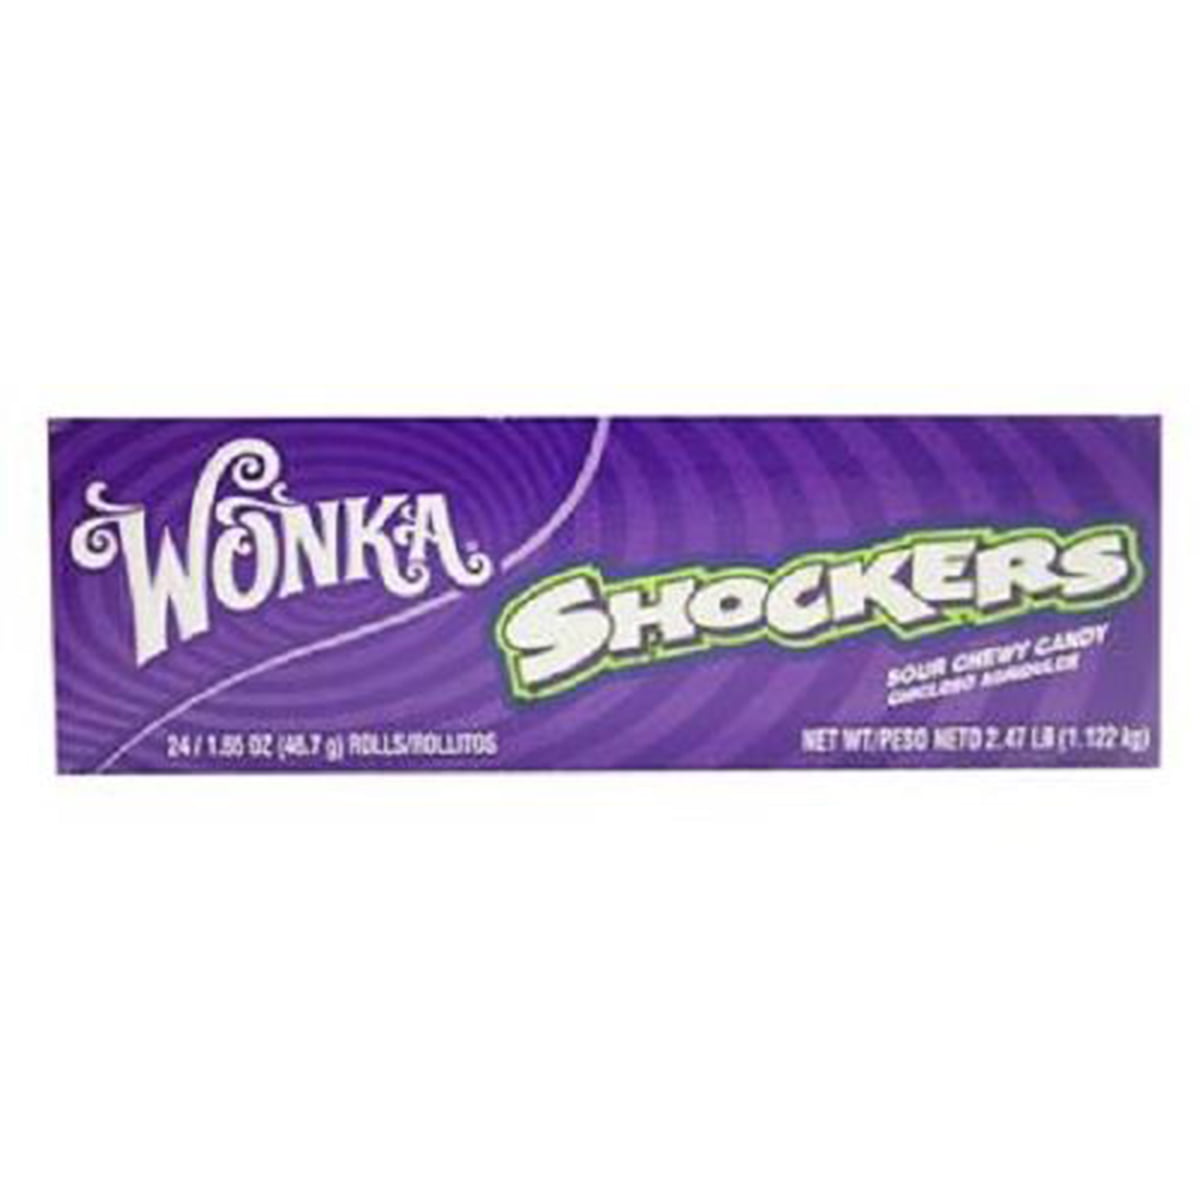 Wonka Shockers